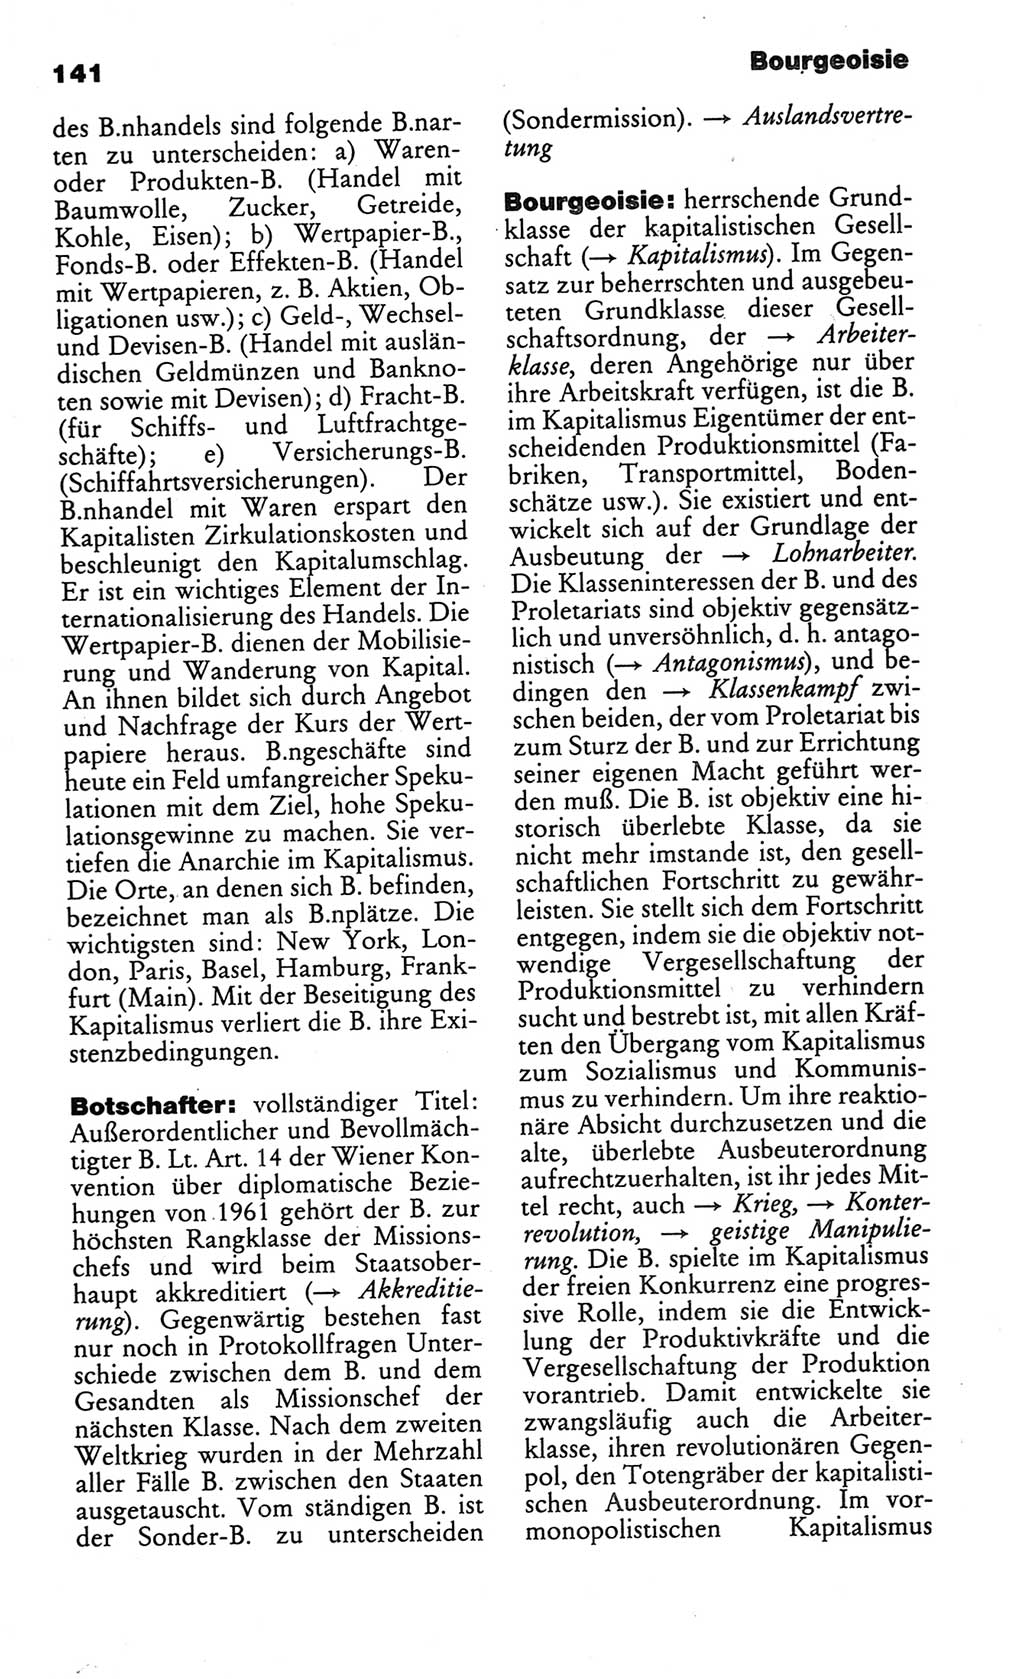 Kleines politisches Wörterbuch [Deutsche Demokratische Republik (DDR)] 1986, Seite 141 (Kl. pol. Wb. DDR 1986, S. 141)